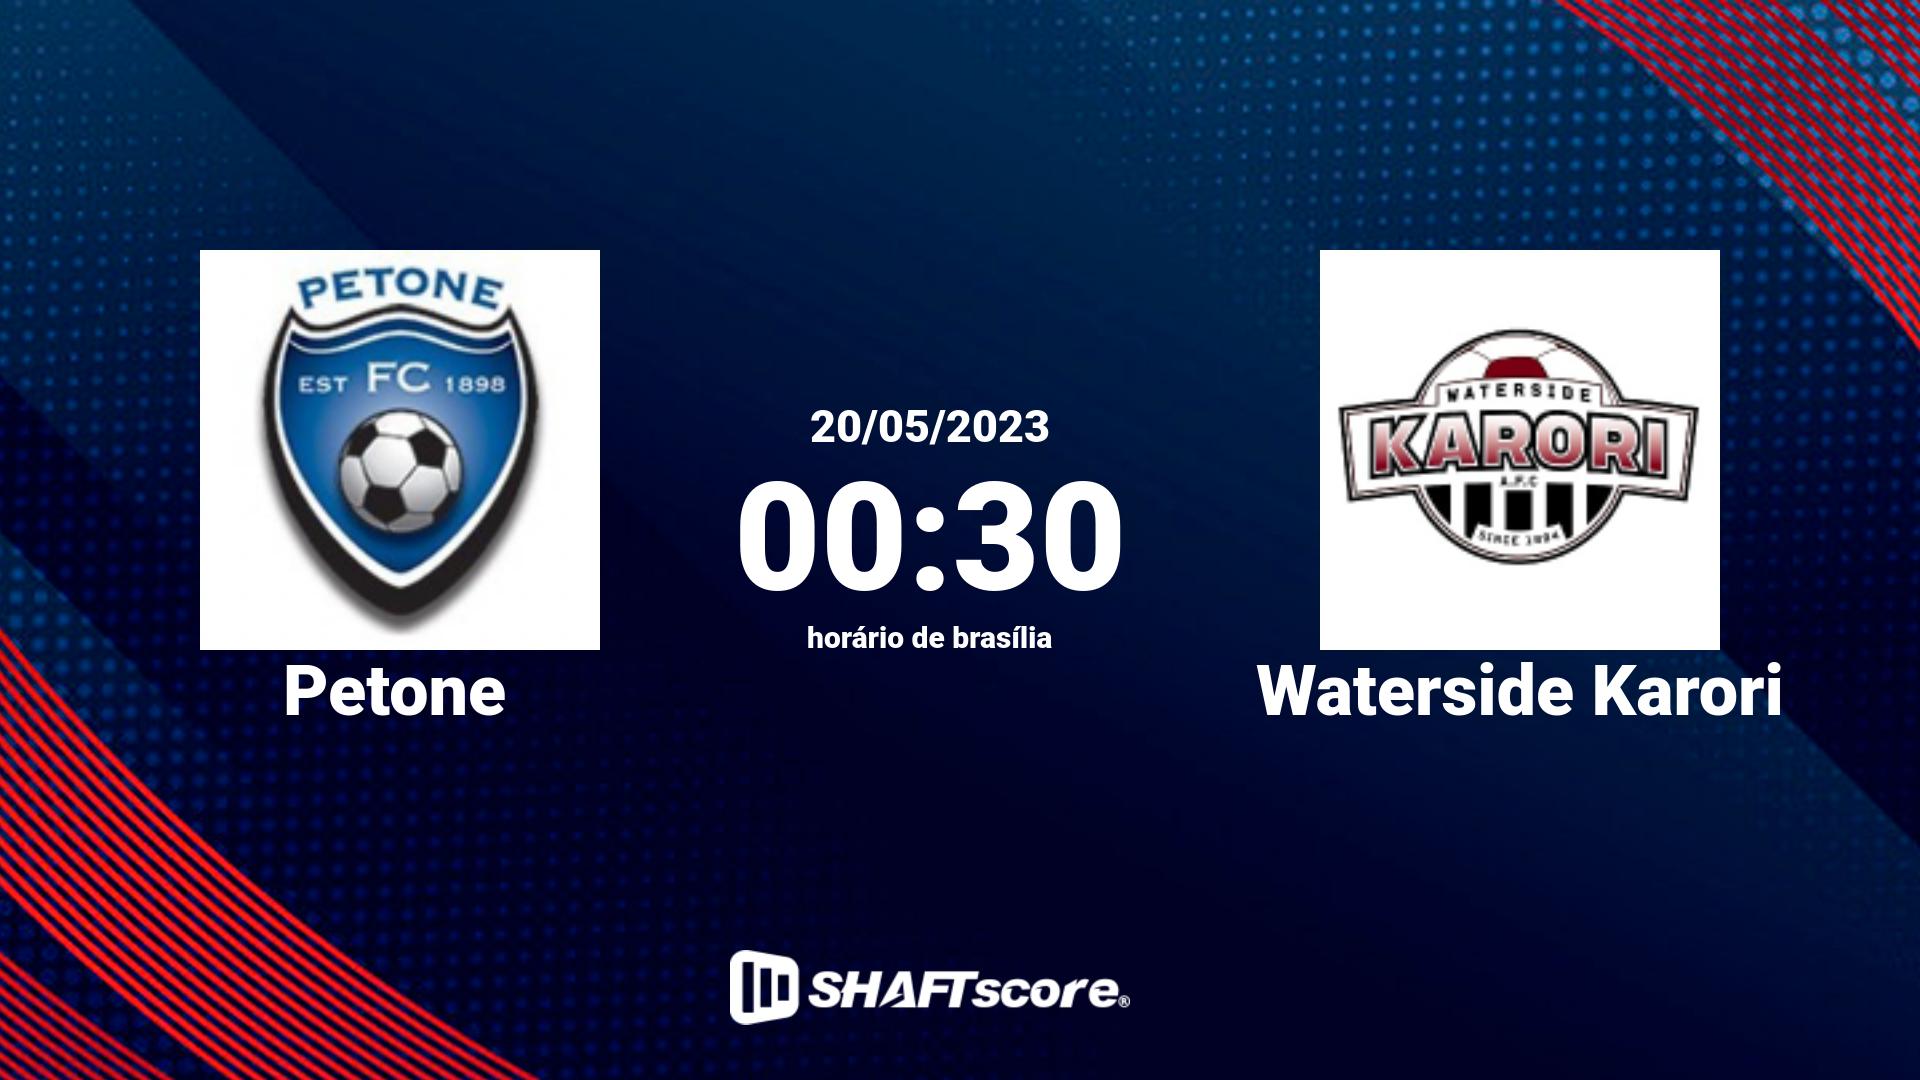 Estatísticas do jogo Petone vs Waterside Karori 20.05 00:30